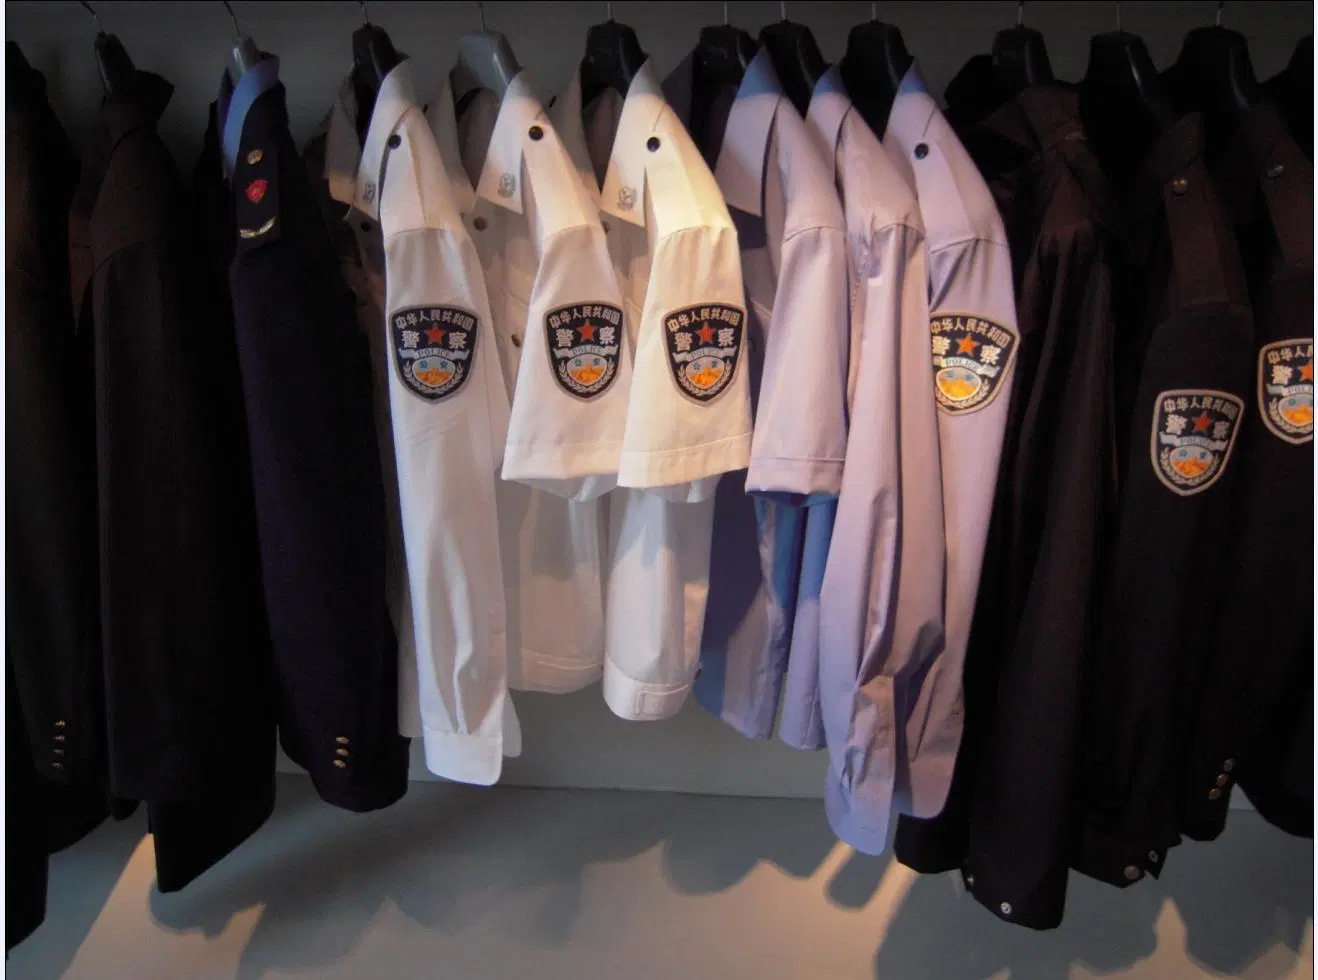 China Polizei Militär Uniform Shirts